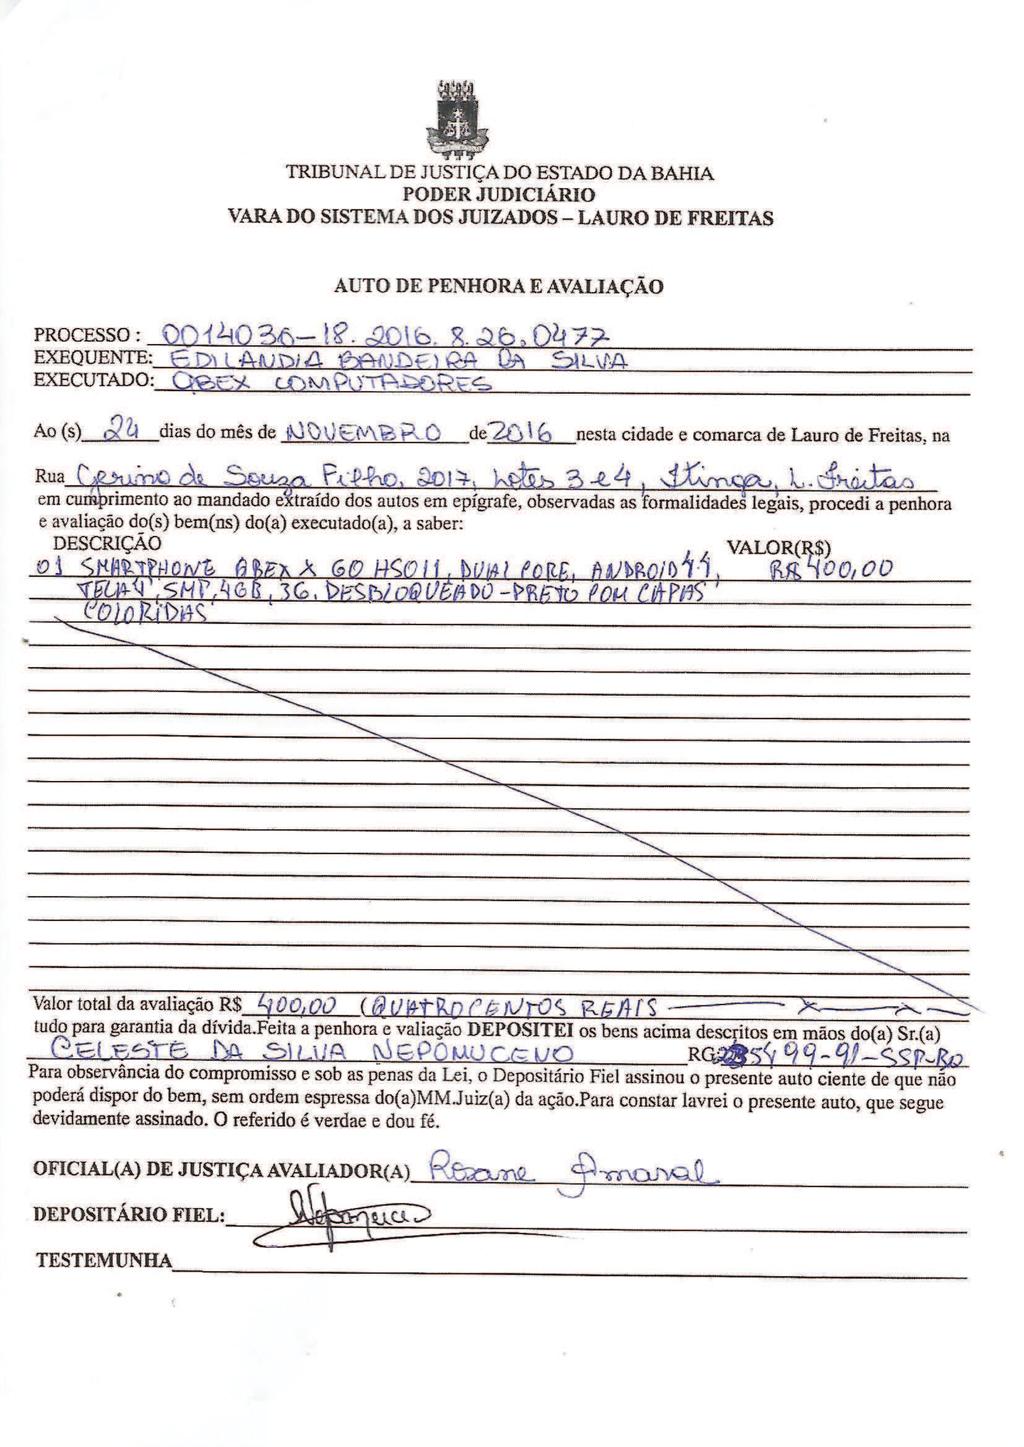 fls. 30 Assinado eletronicamente por: ROSANE FERREIRA SANTIAGO AMARAL; Código de validação do documento: 579e2864 a ser validado no sítio do PROJUDI - TJBA.